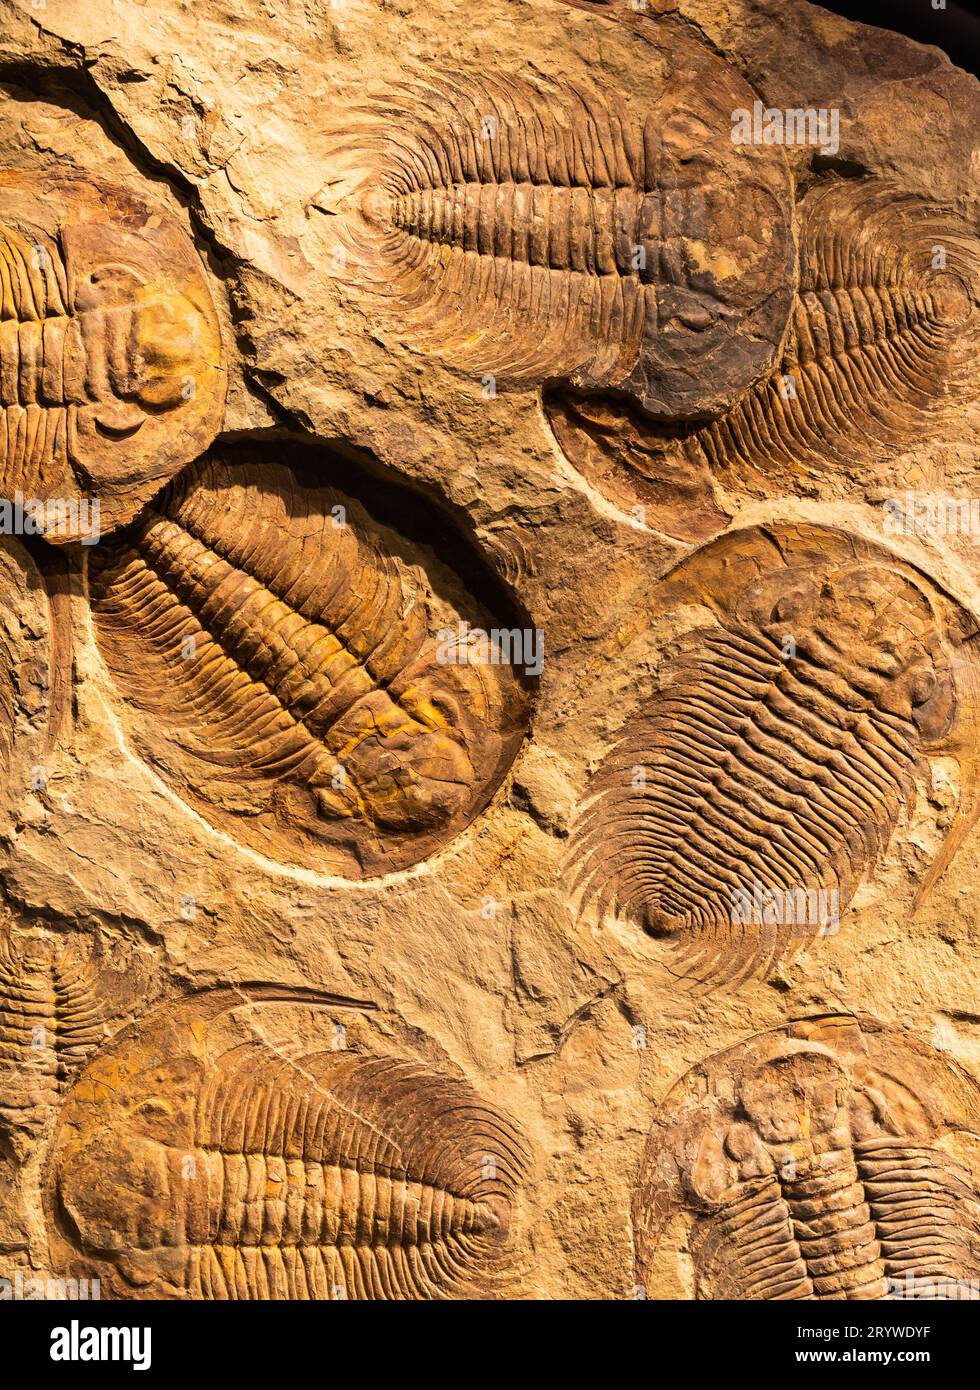 Fossile di Trilobite - Acadoparadoxides briareus - antico artropode fossilizzato su roccia. Foto Stock